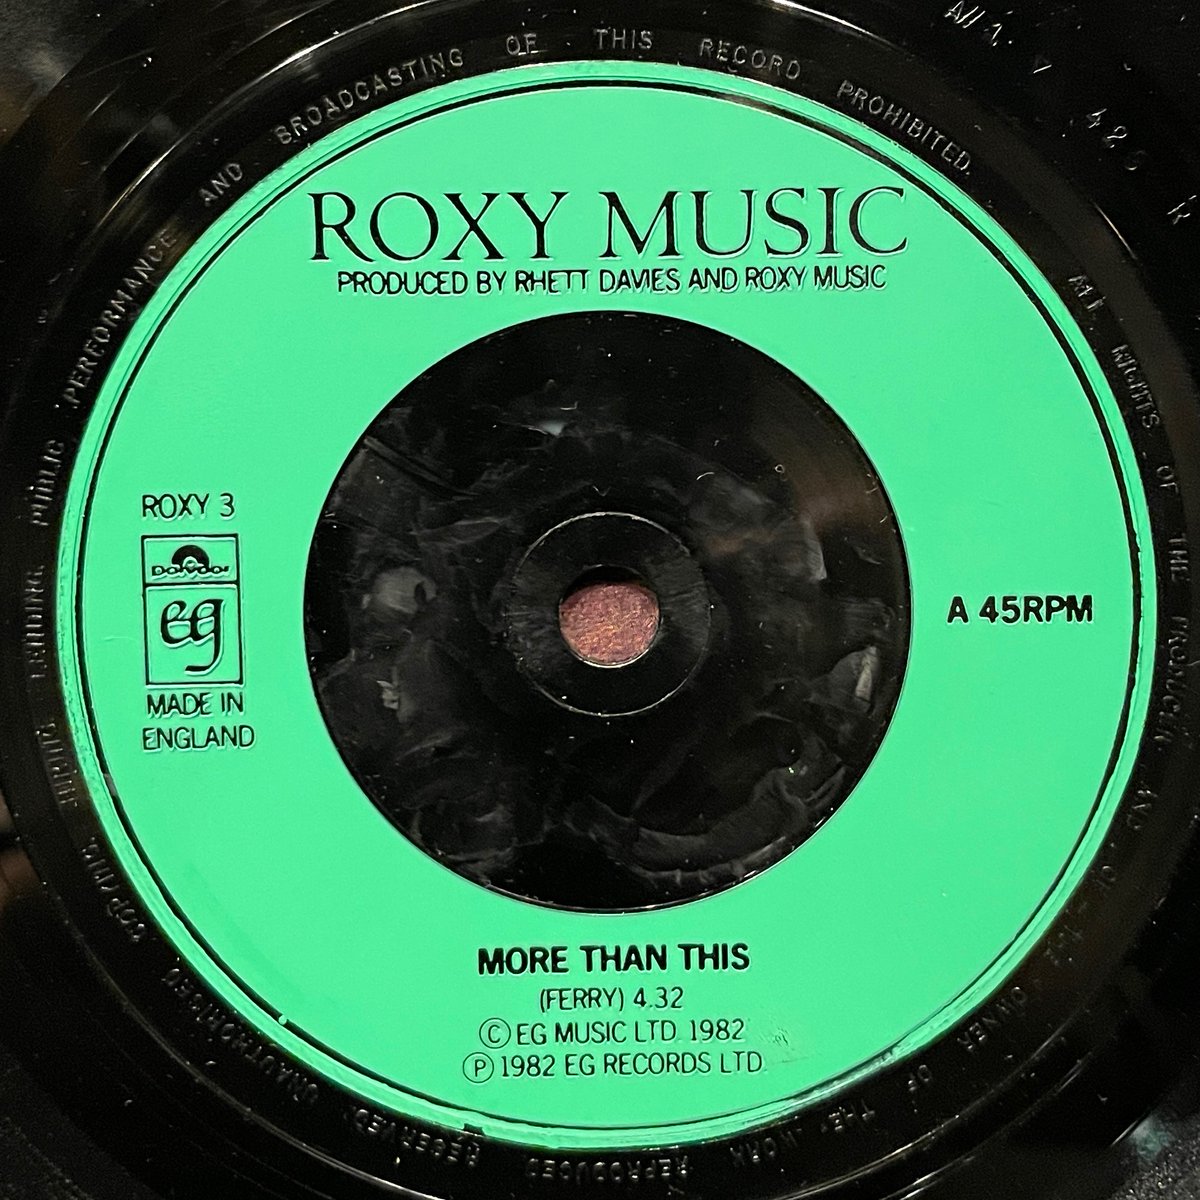 ほな7いこか
ROXY MUSIC / More Than This [’82 EG / Polydor --- ROXY 3]　　　
#RoxyMusic  #MoreThanThis  #avalon  #RhettDavies  #BobClearmountain  #PeterSaville  #VeronicaVeronese  #DGRosetti  #vinylbar  #musicbar  #レコードバー #mhc30032023
youtube.com/watch?v=kOnde5…